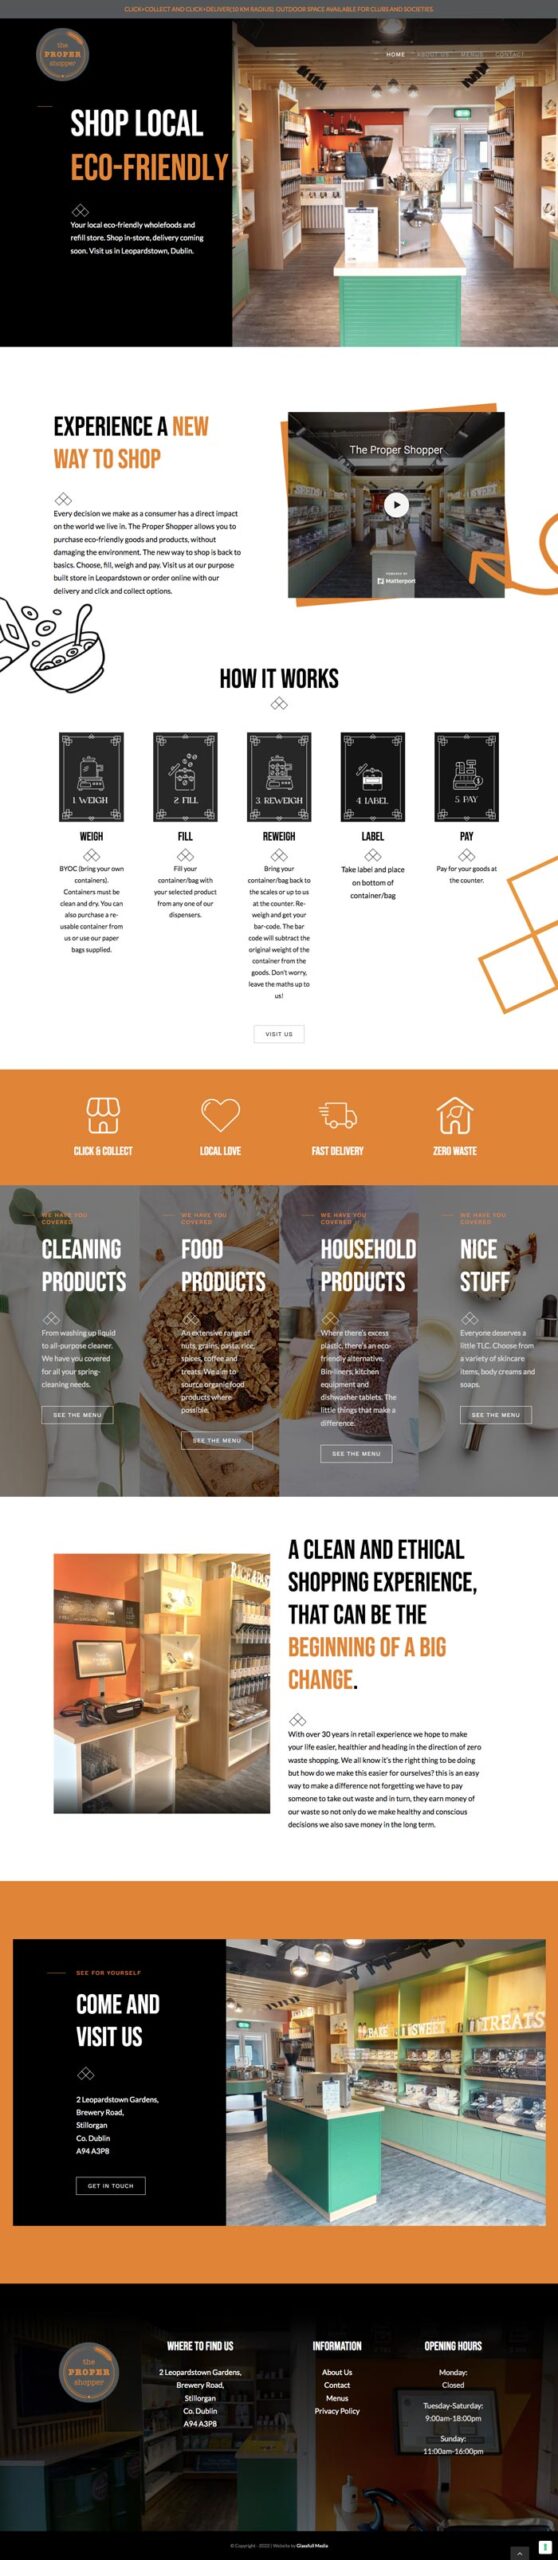 zero waste shop dublin website design